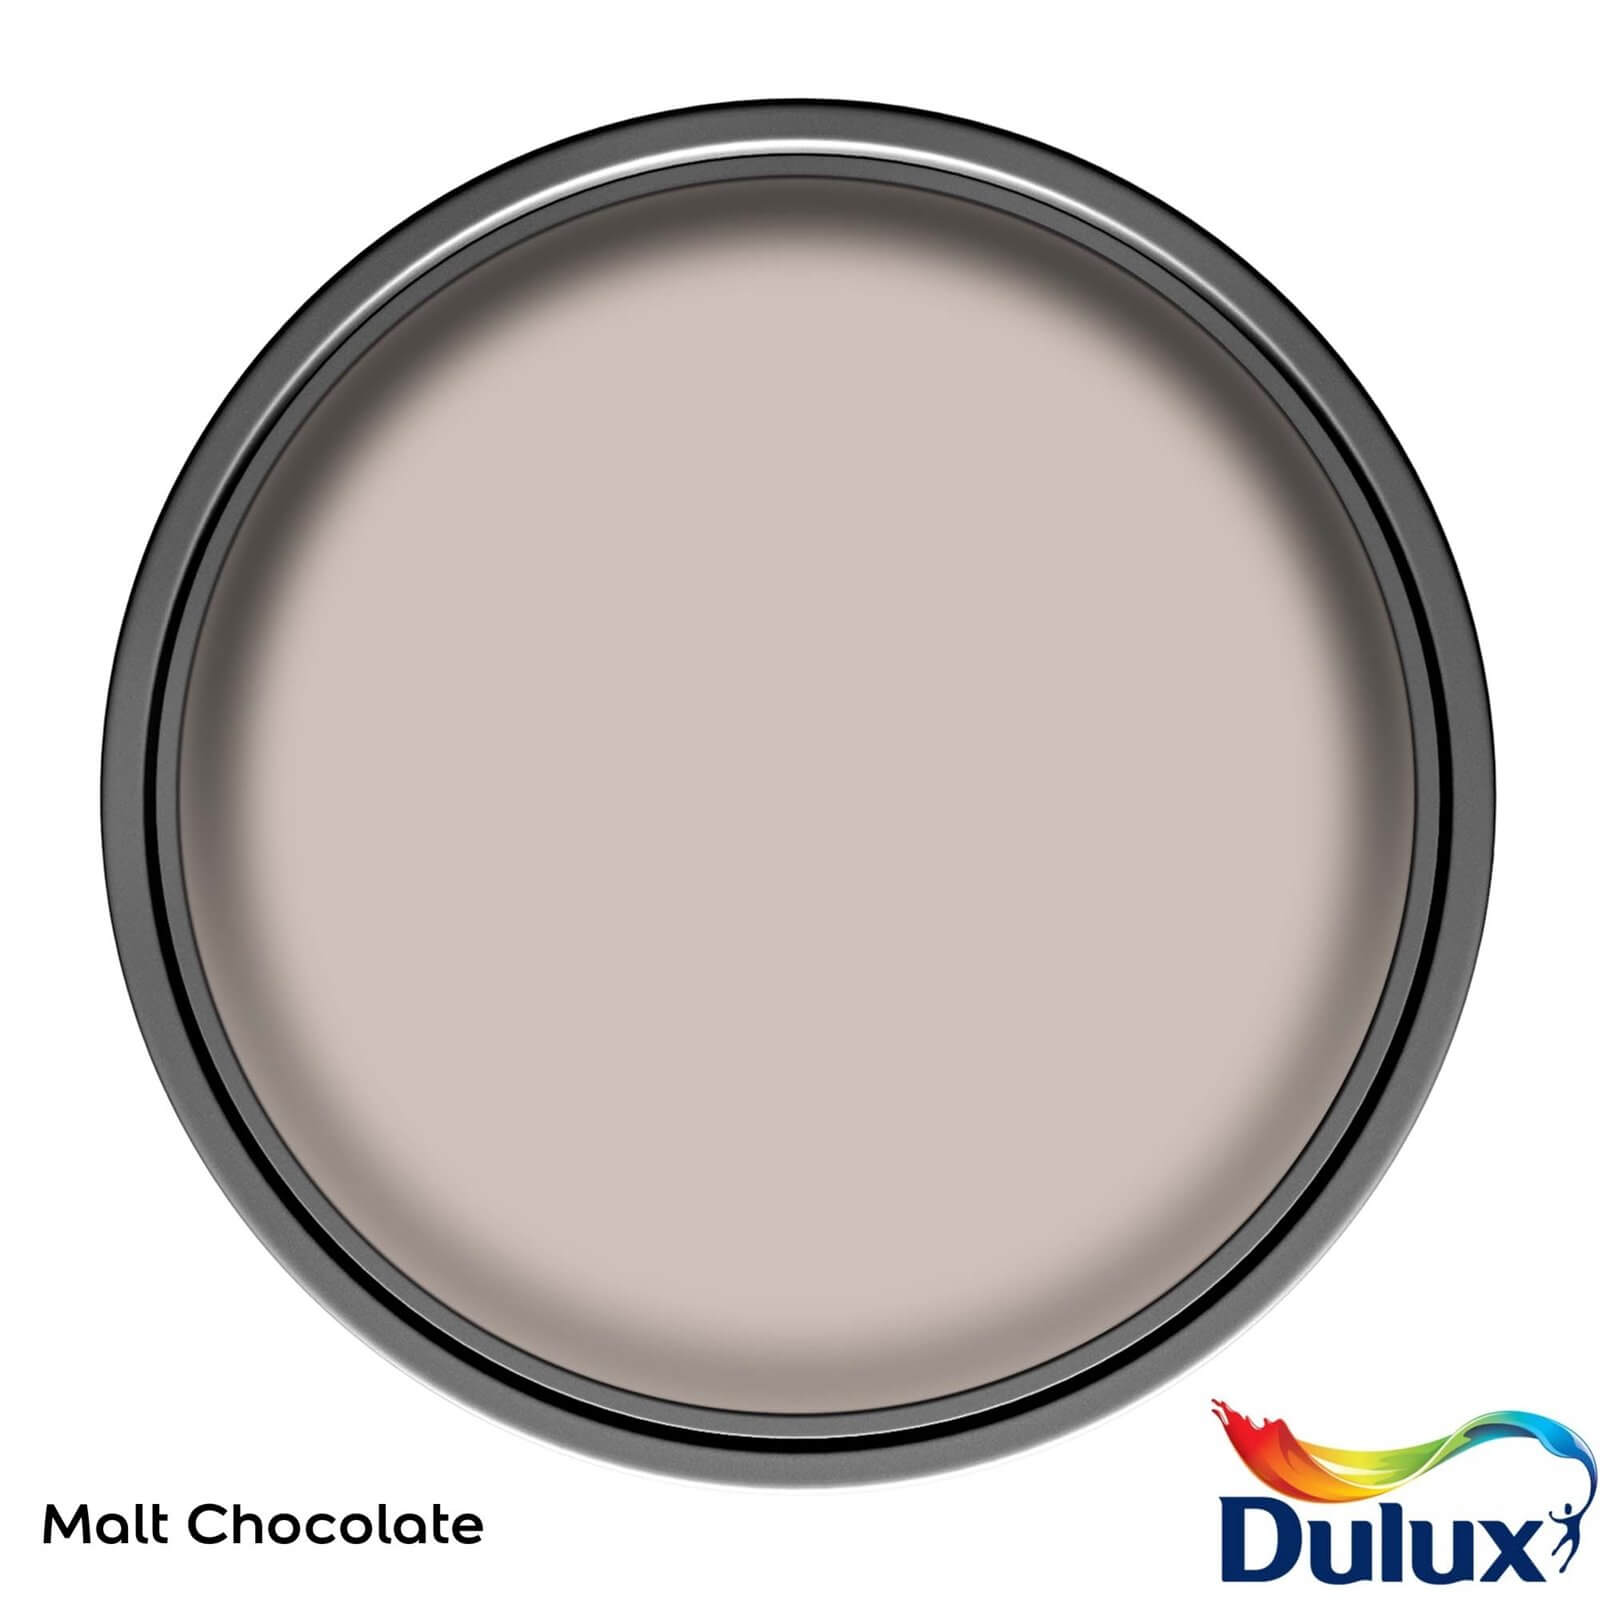 Dulux Easycare Washable & Tough Matt Paint Malt Chocolate - 2.5L